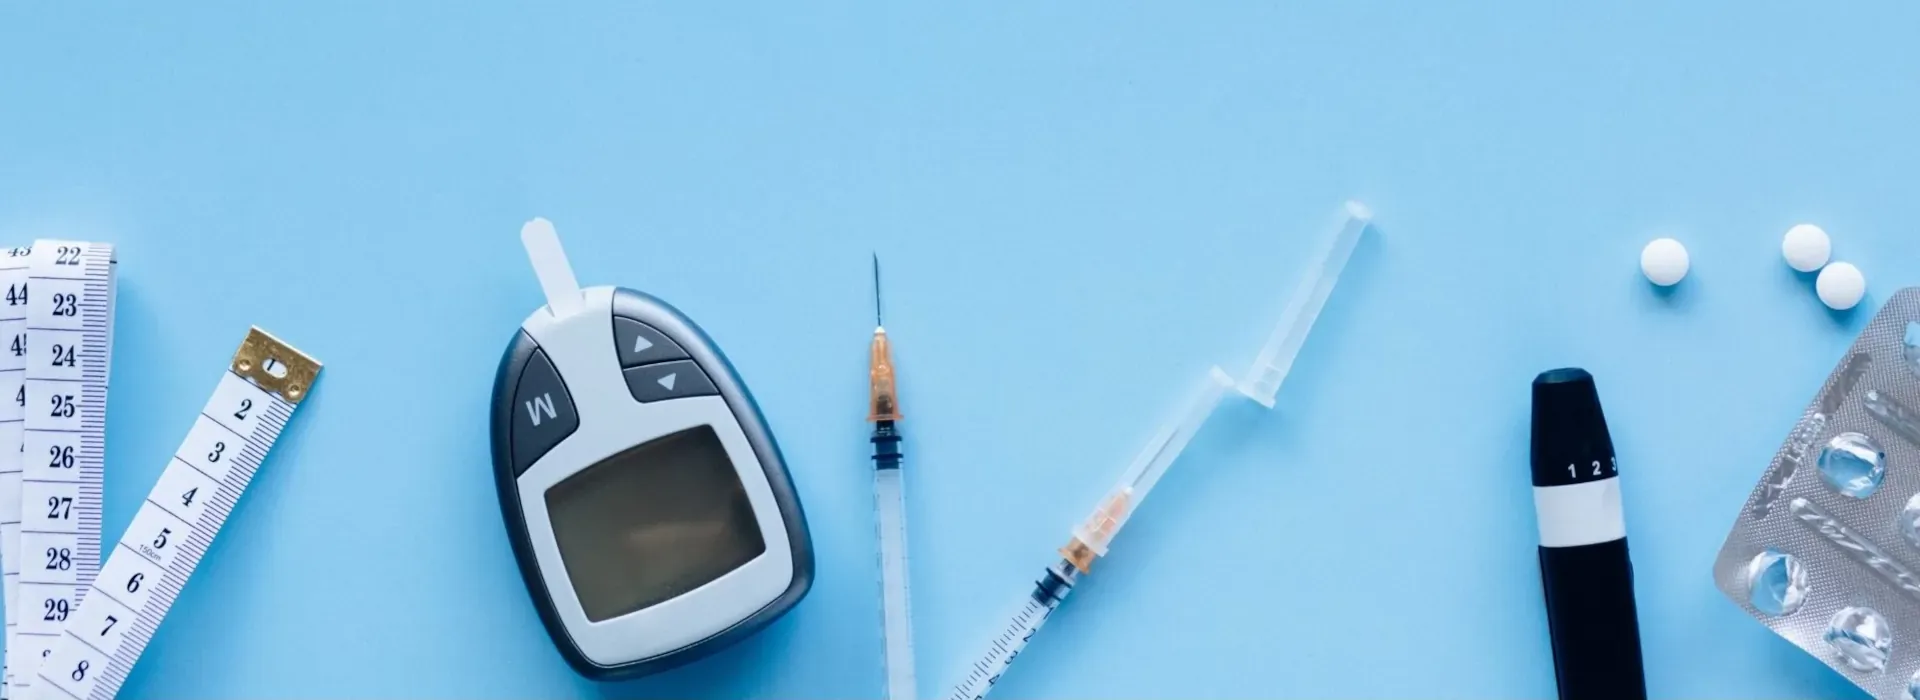 Diabetes mellitus: Ein Blutzuckermessgerät, Insulinspritzen und Tabletten auf einem blauen Untergrund